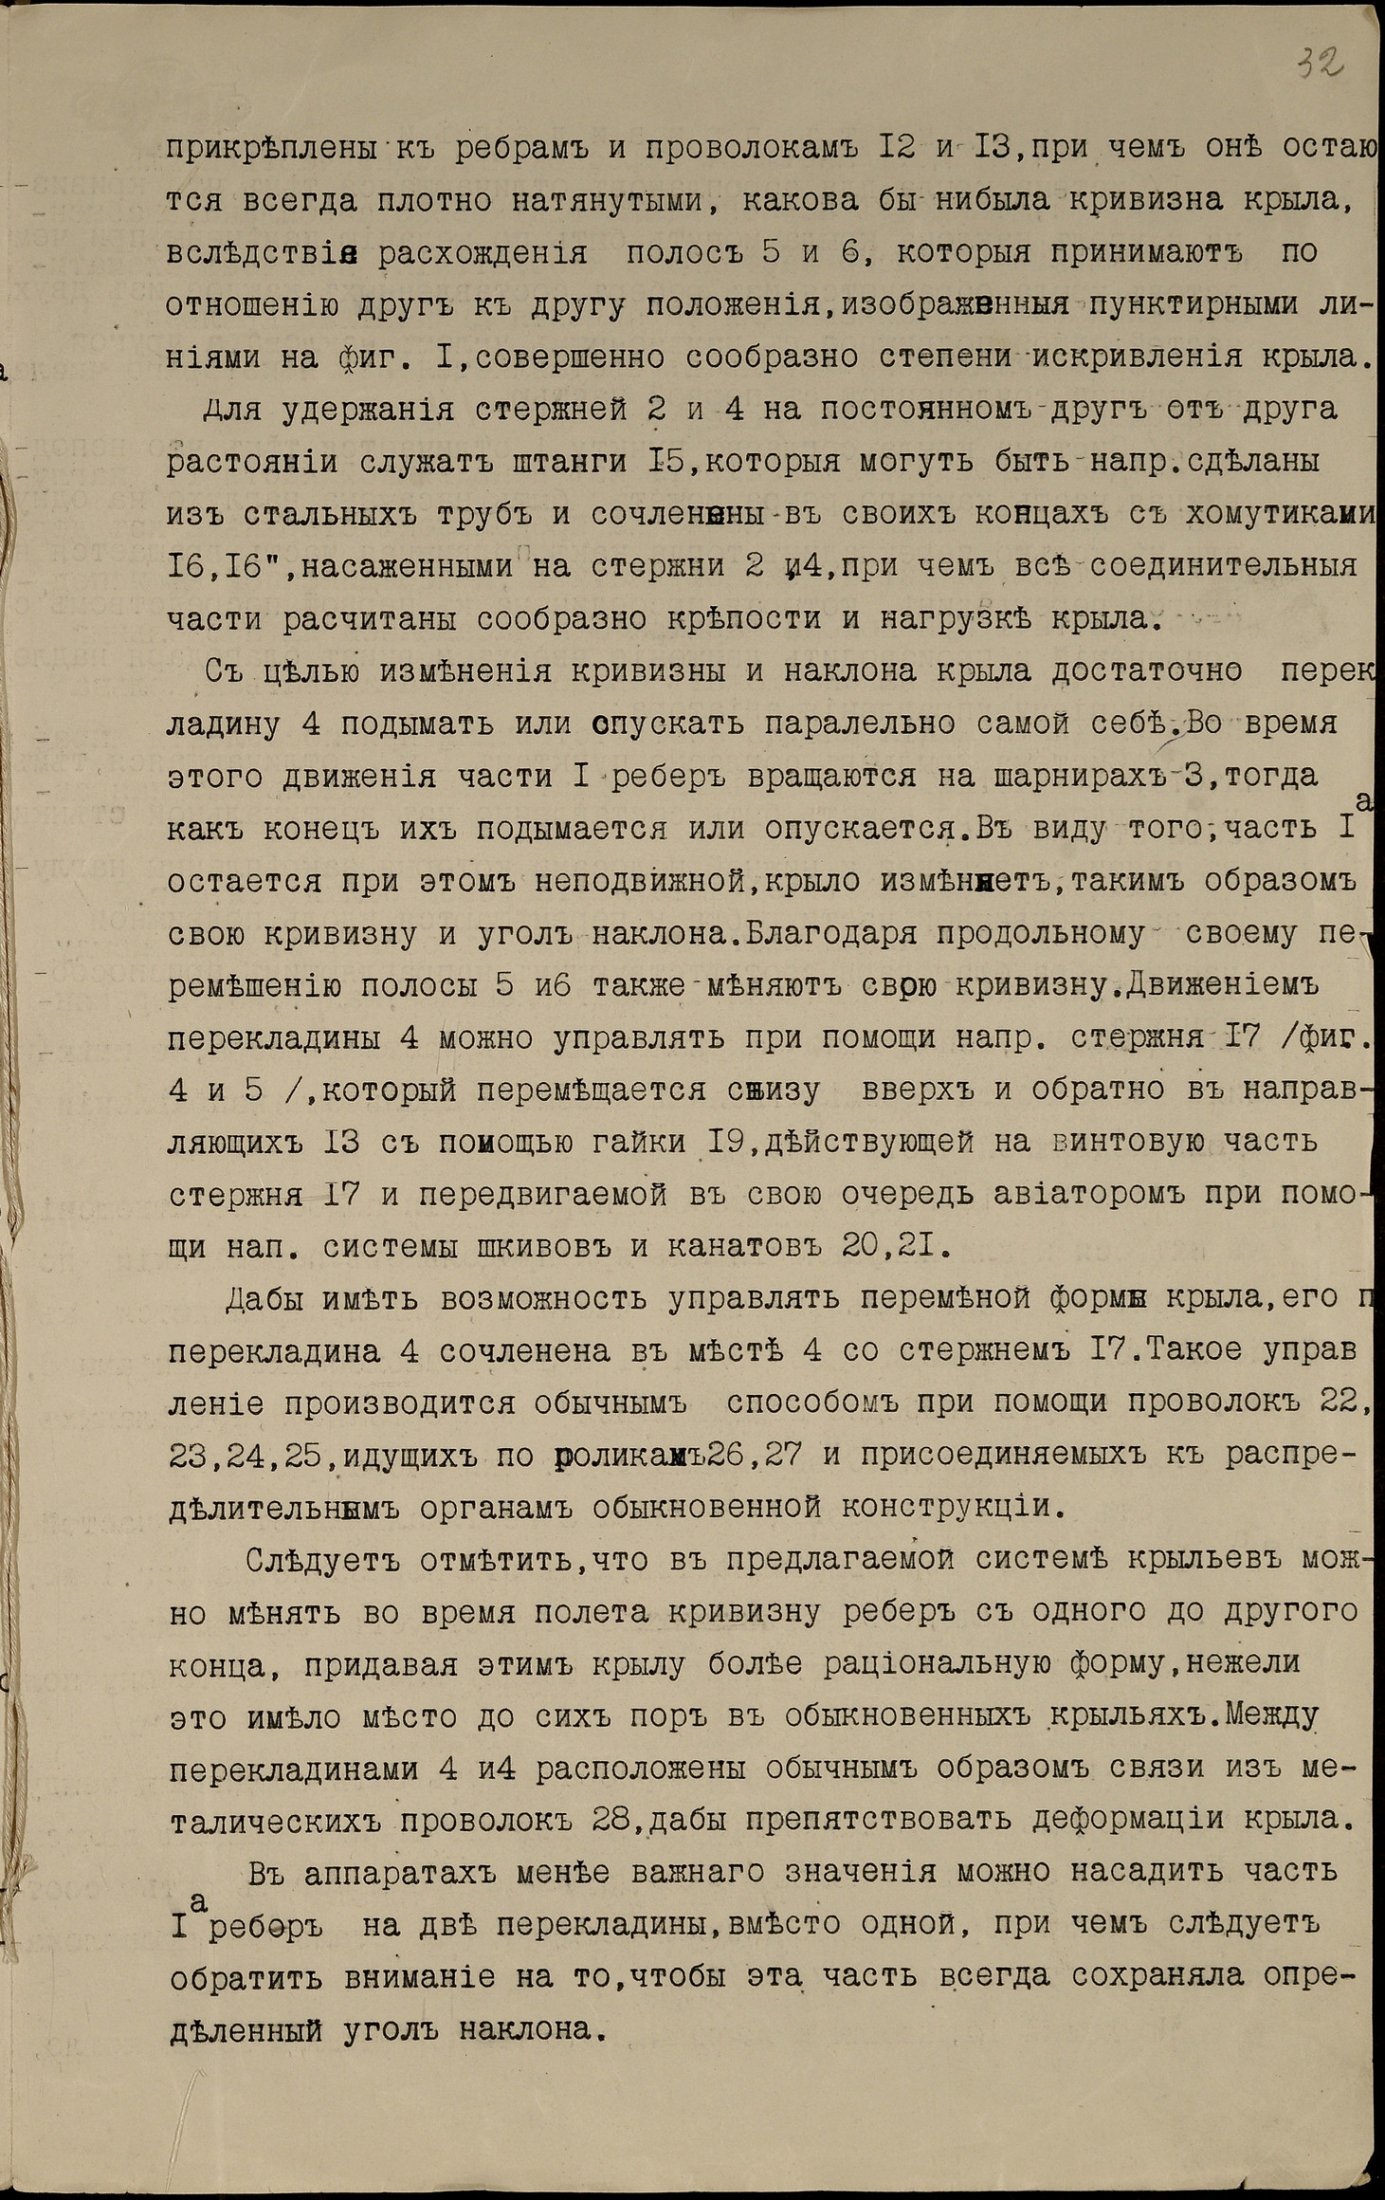 Опис аеропланного крила зі змінною кривизною поверхні, винайденого майстернею Федора Федоровича Терещенка. 19 березня 1916 р.